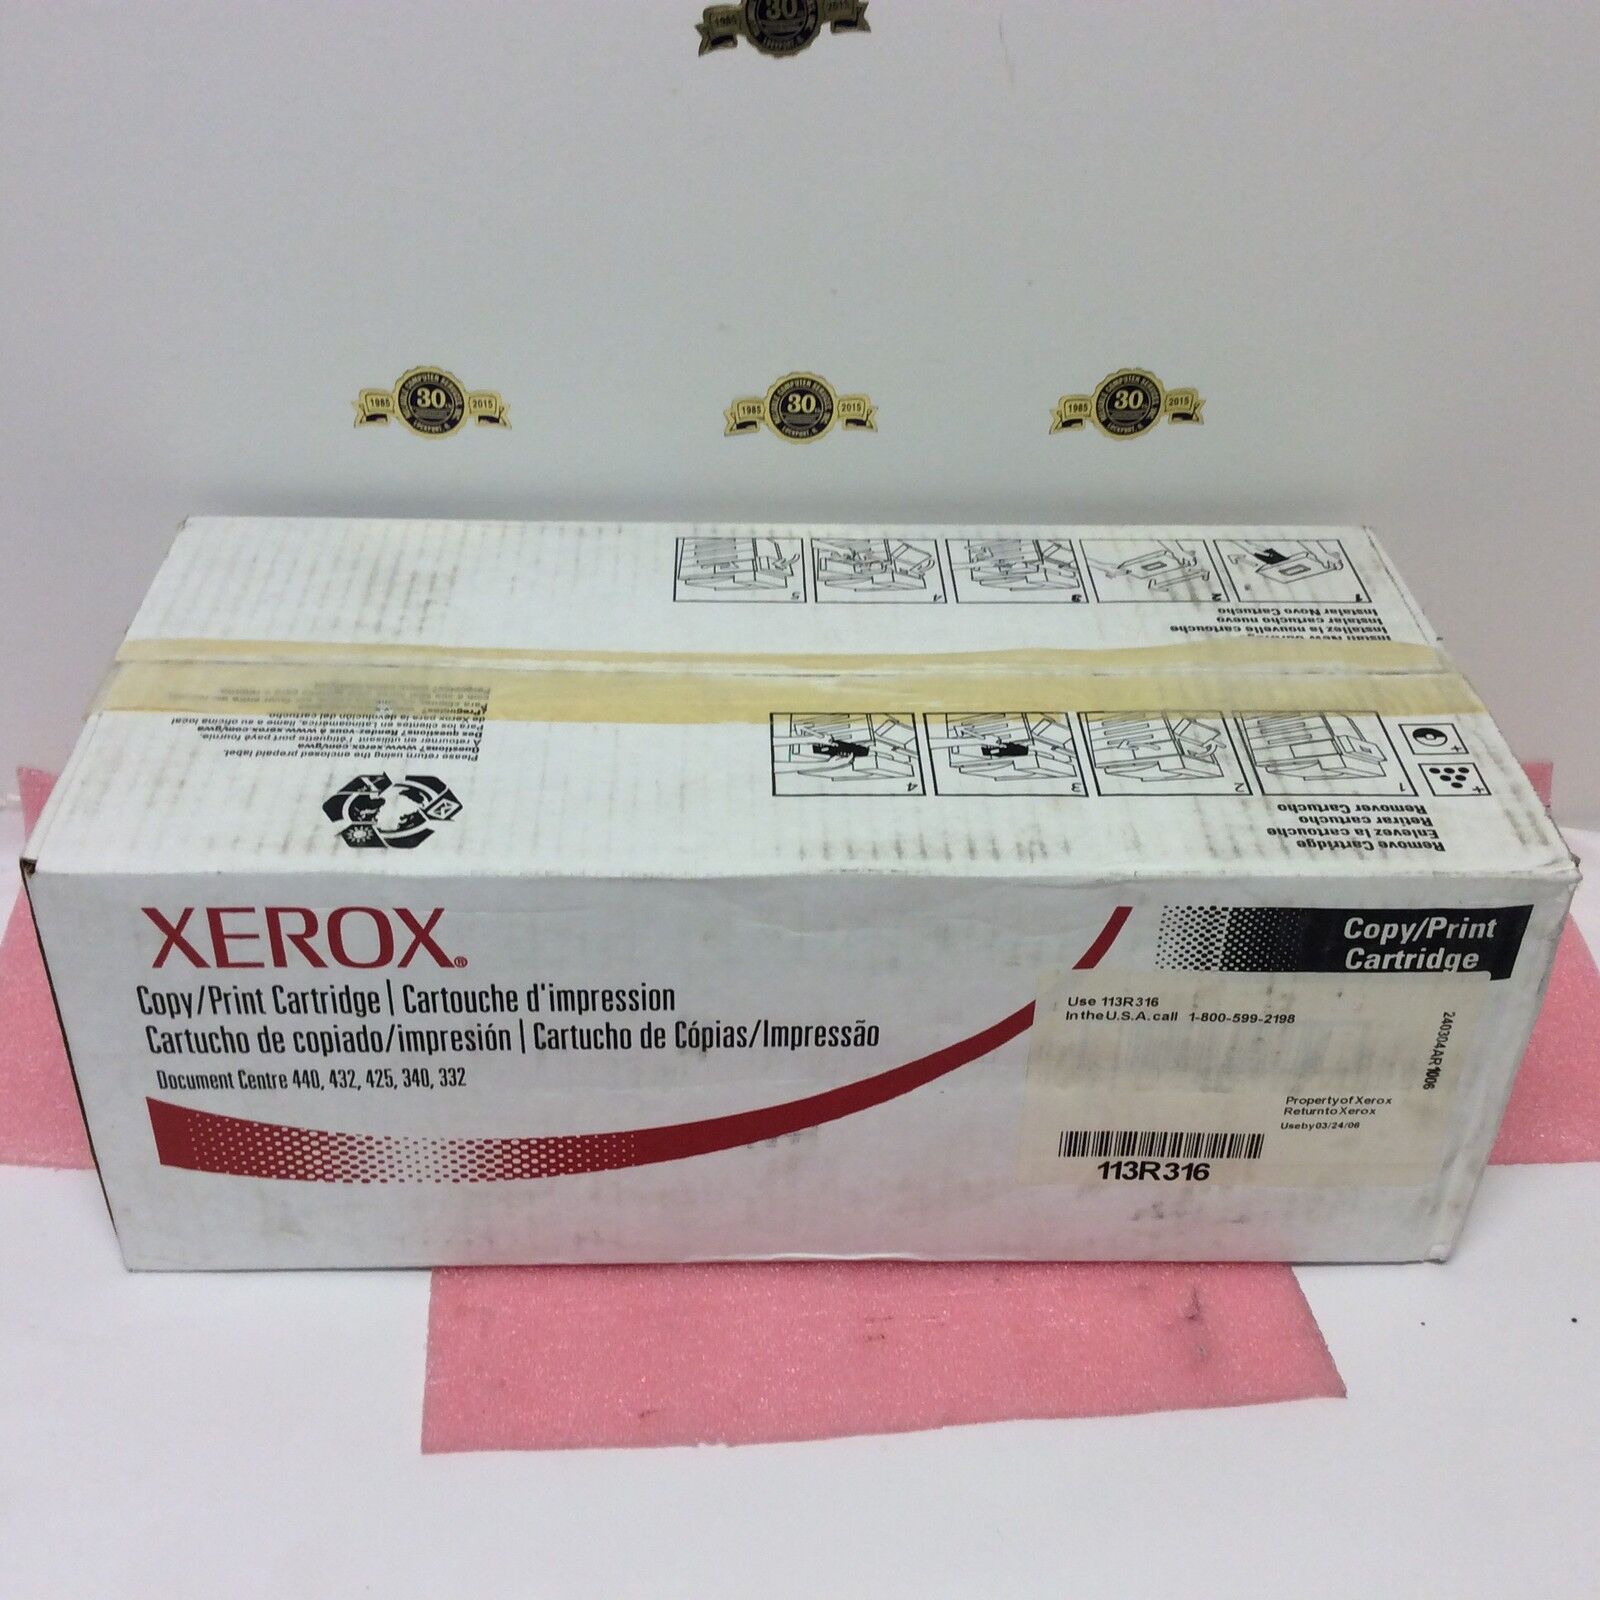 XEROX 113R316 Copy Print Cartridge NEW SEALED IN XEROX BOX as picture